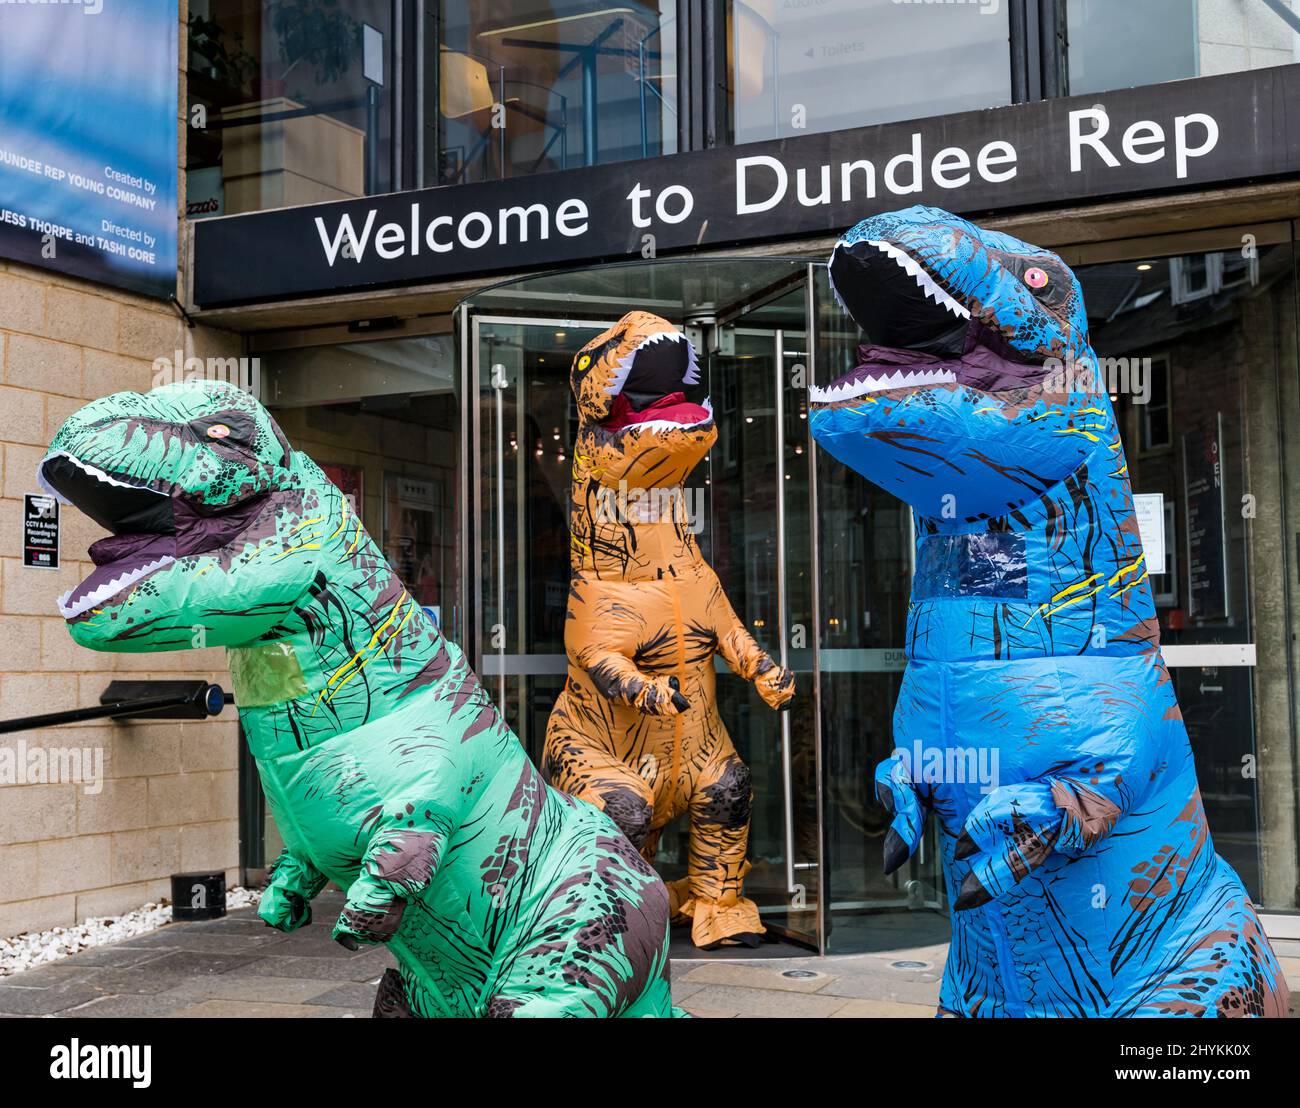 Profeta Benigno Alojamiento Dundee Rep, Dundee, Escocia, Reino Unido, 15 de marzo de 2022. Dundee Rep  Young Company: El grupo de teatro marca el estreno mundial del “optimismo”  con personas disfrazadas de dinosaurios como parte